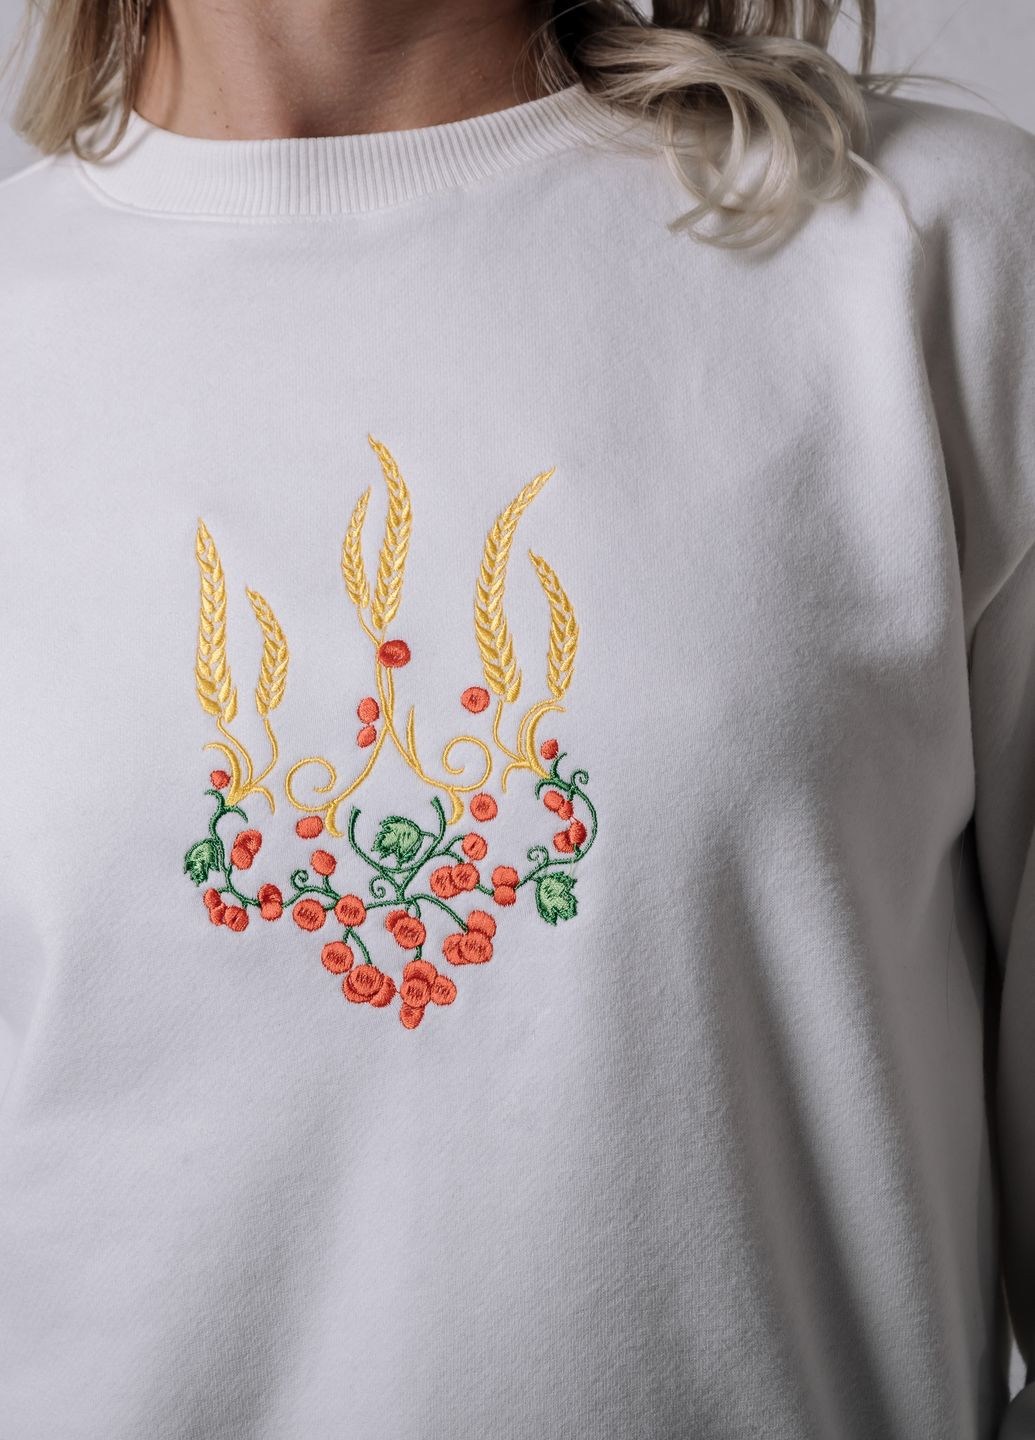 Женский свитшот с вышивкой "Тризуб красная калина" VINCA - крой украинская символика молочный повседневный хлопок, трикотаж - (266340850)